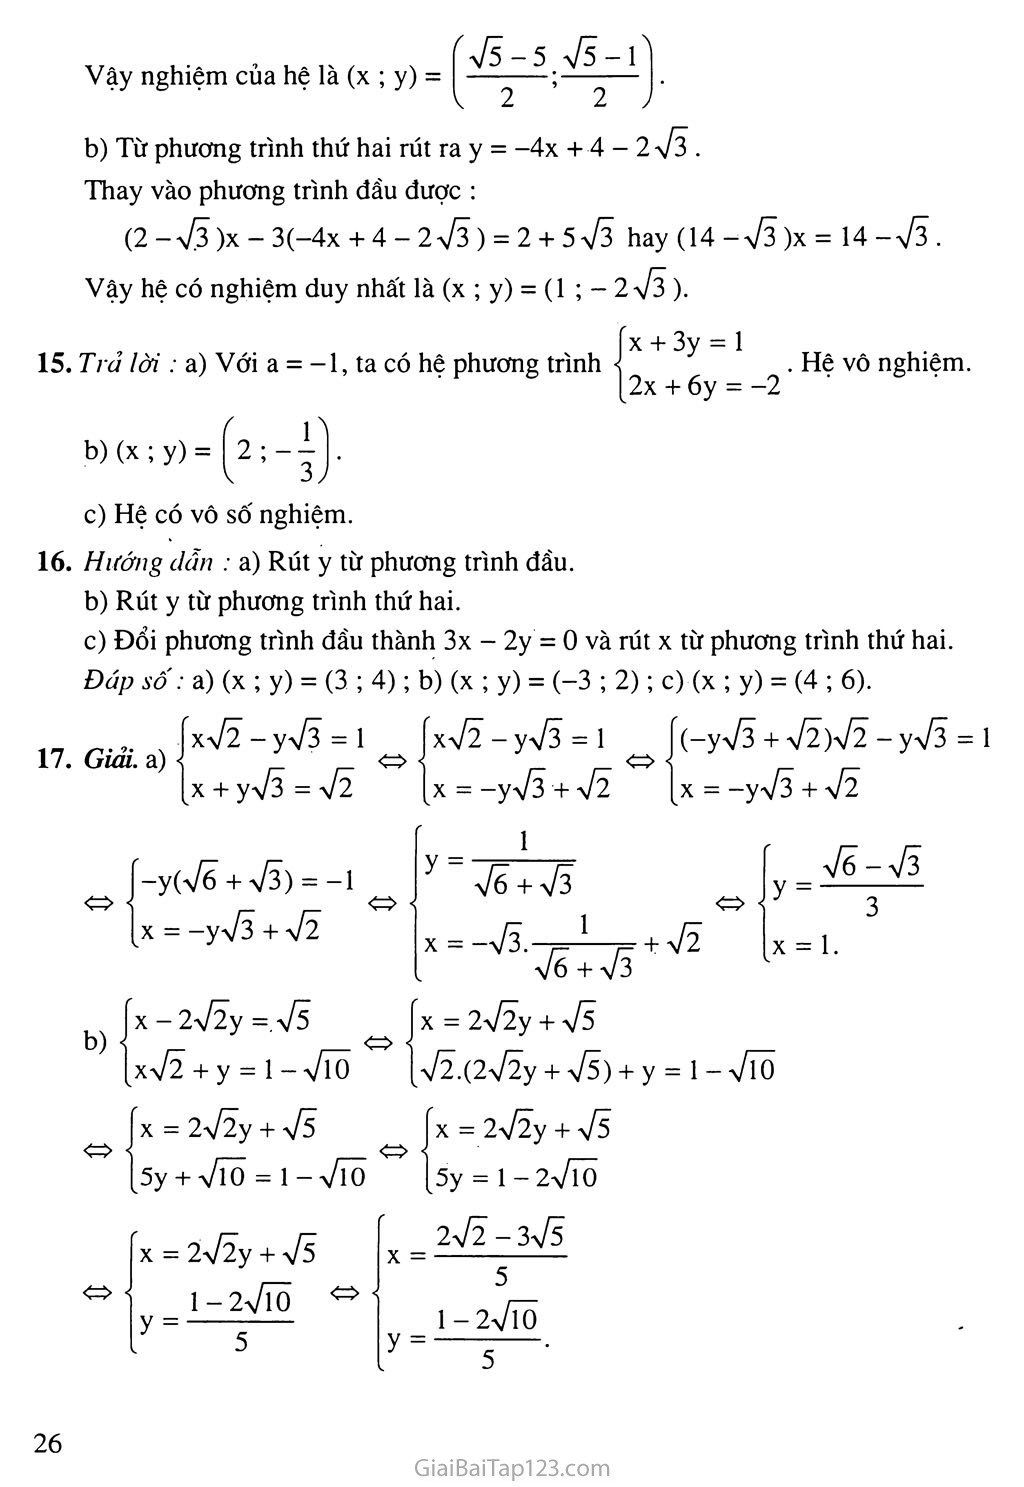 Bài 3. Giải hệ phương trình bằng phương pháp thế trang 5